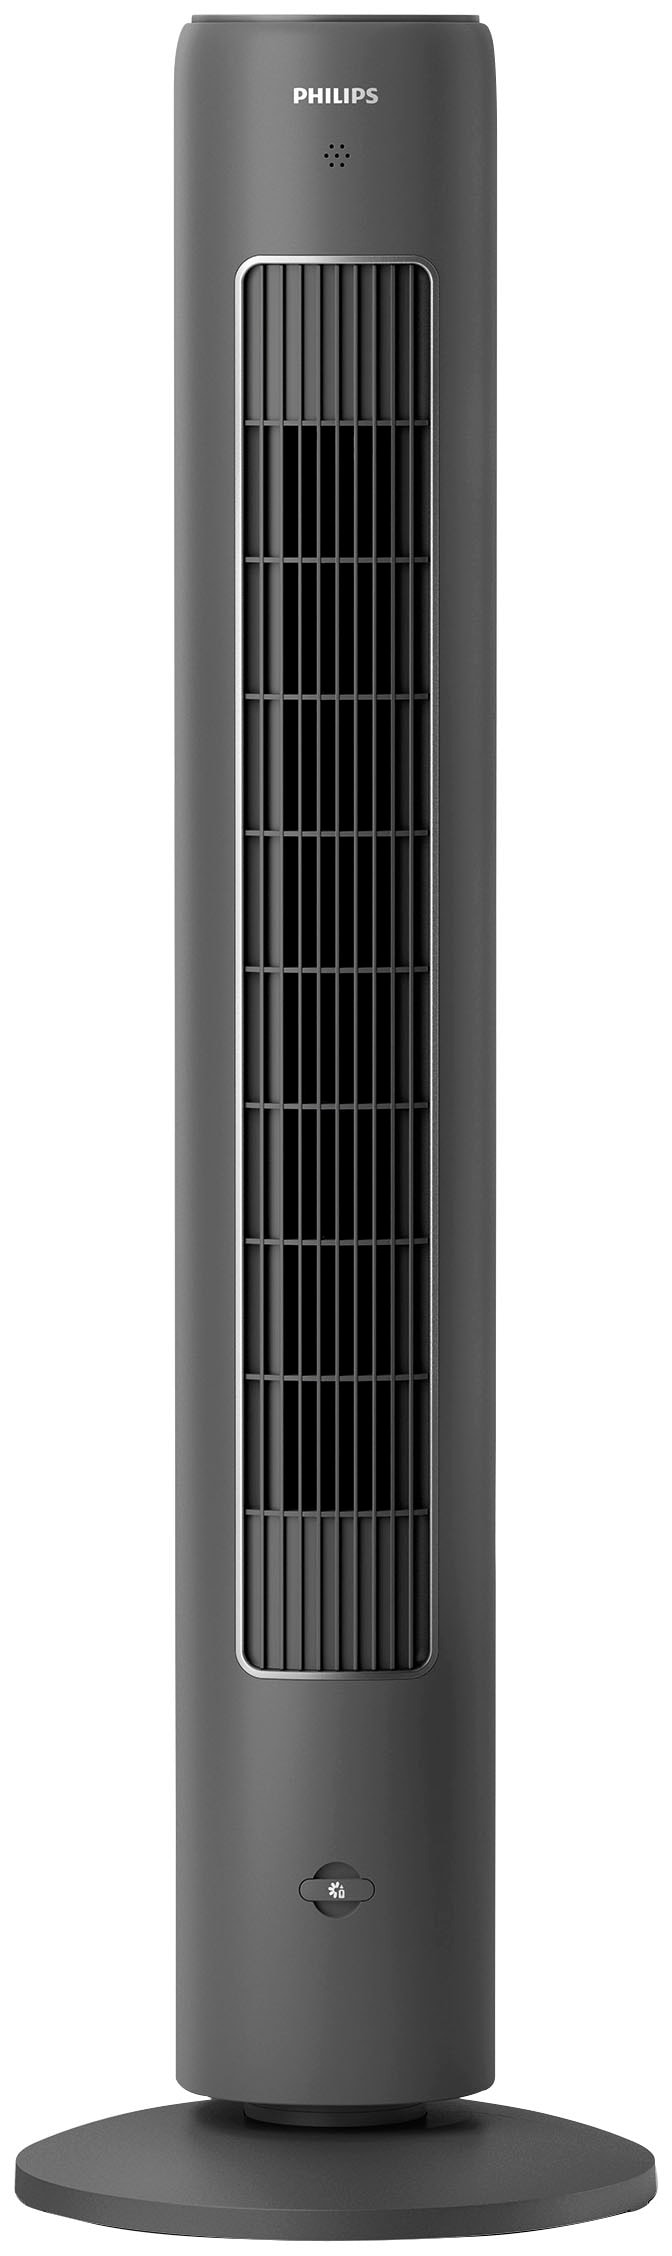 Philips Turmventilator "CX5535/11", 3 Stufen, Höhe 105cm, inkl. Fernbedienung, geeignet als Aroma-Diffuser